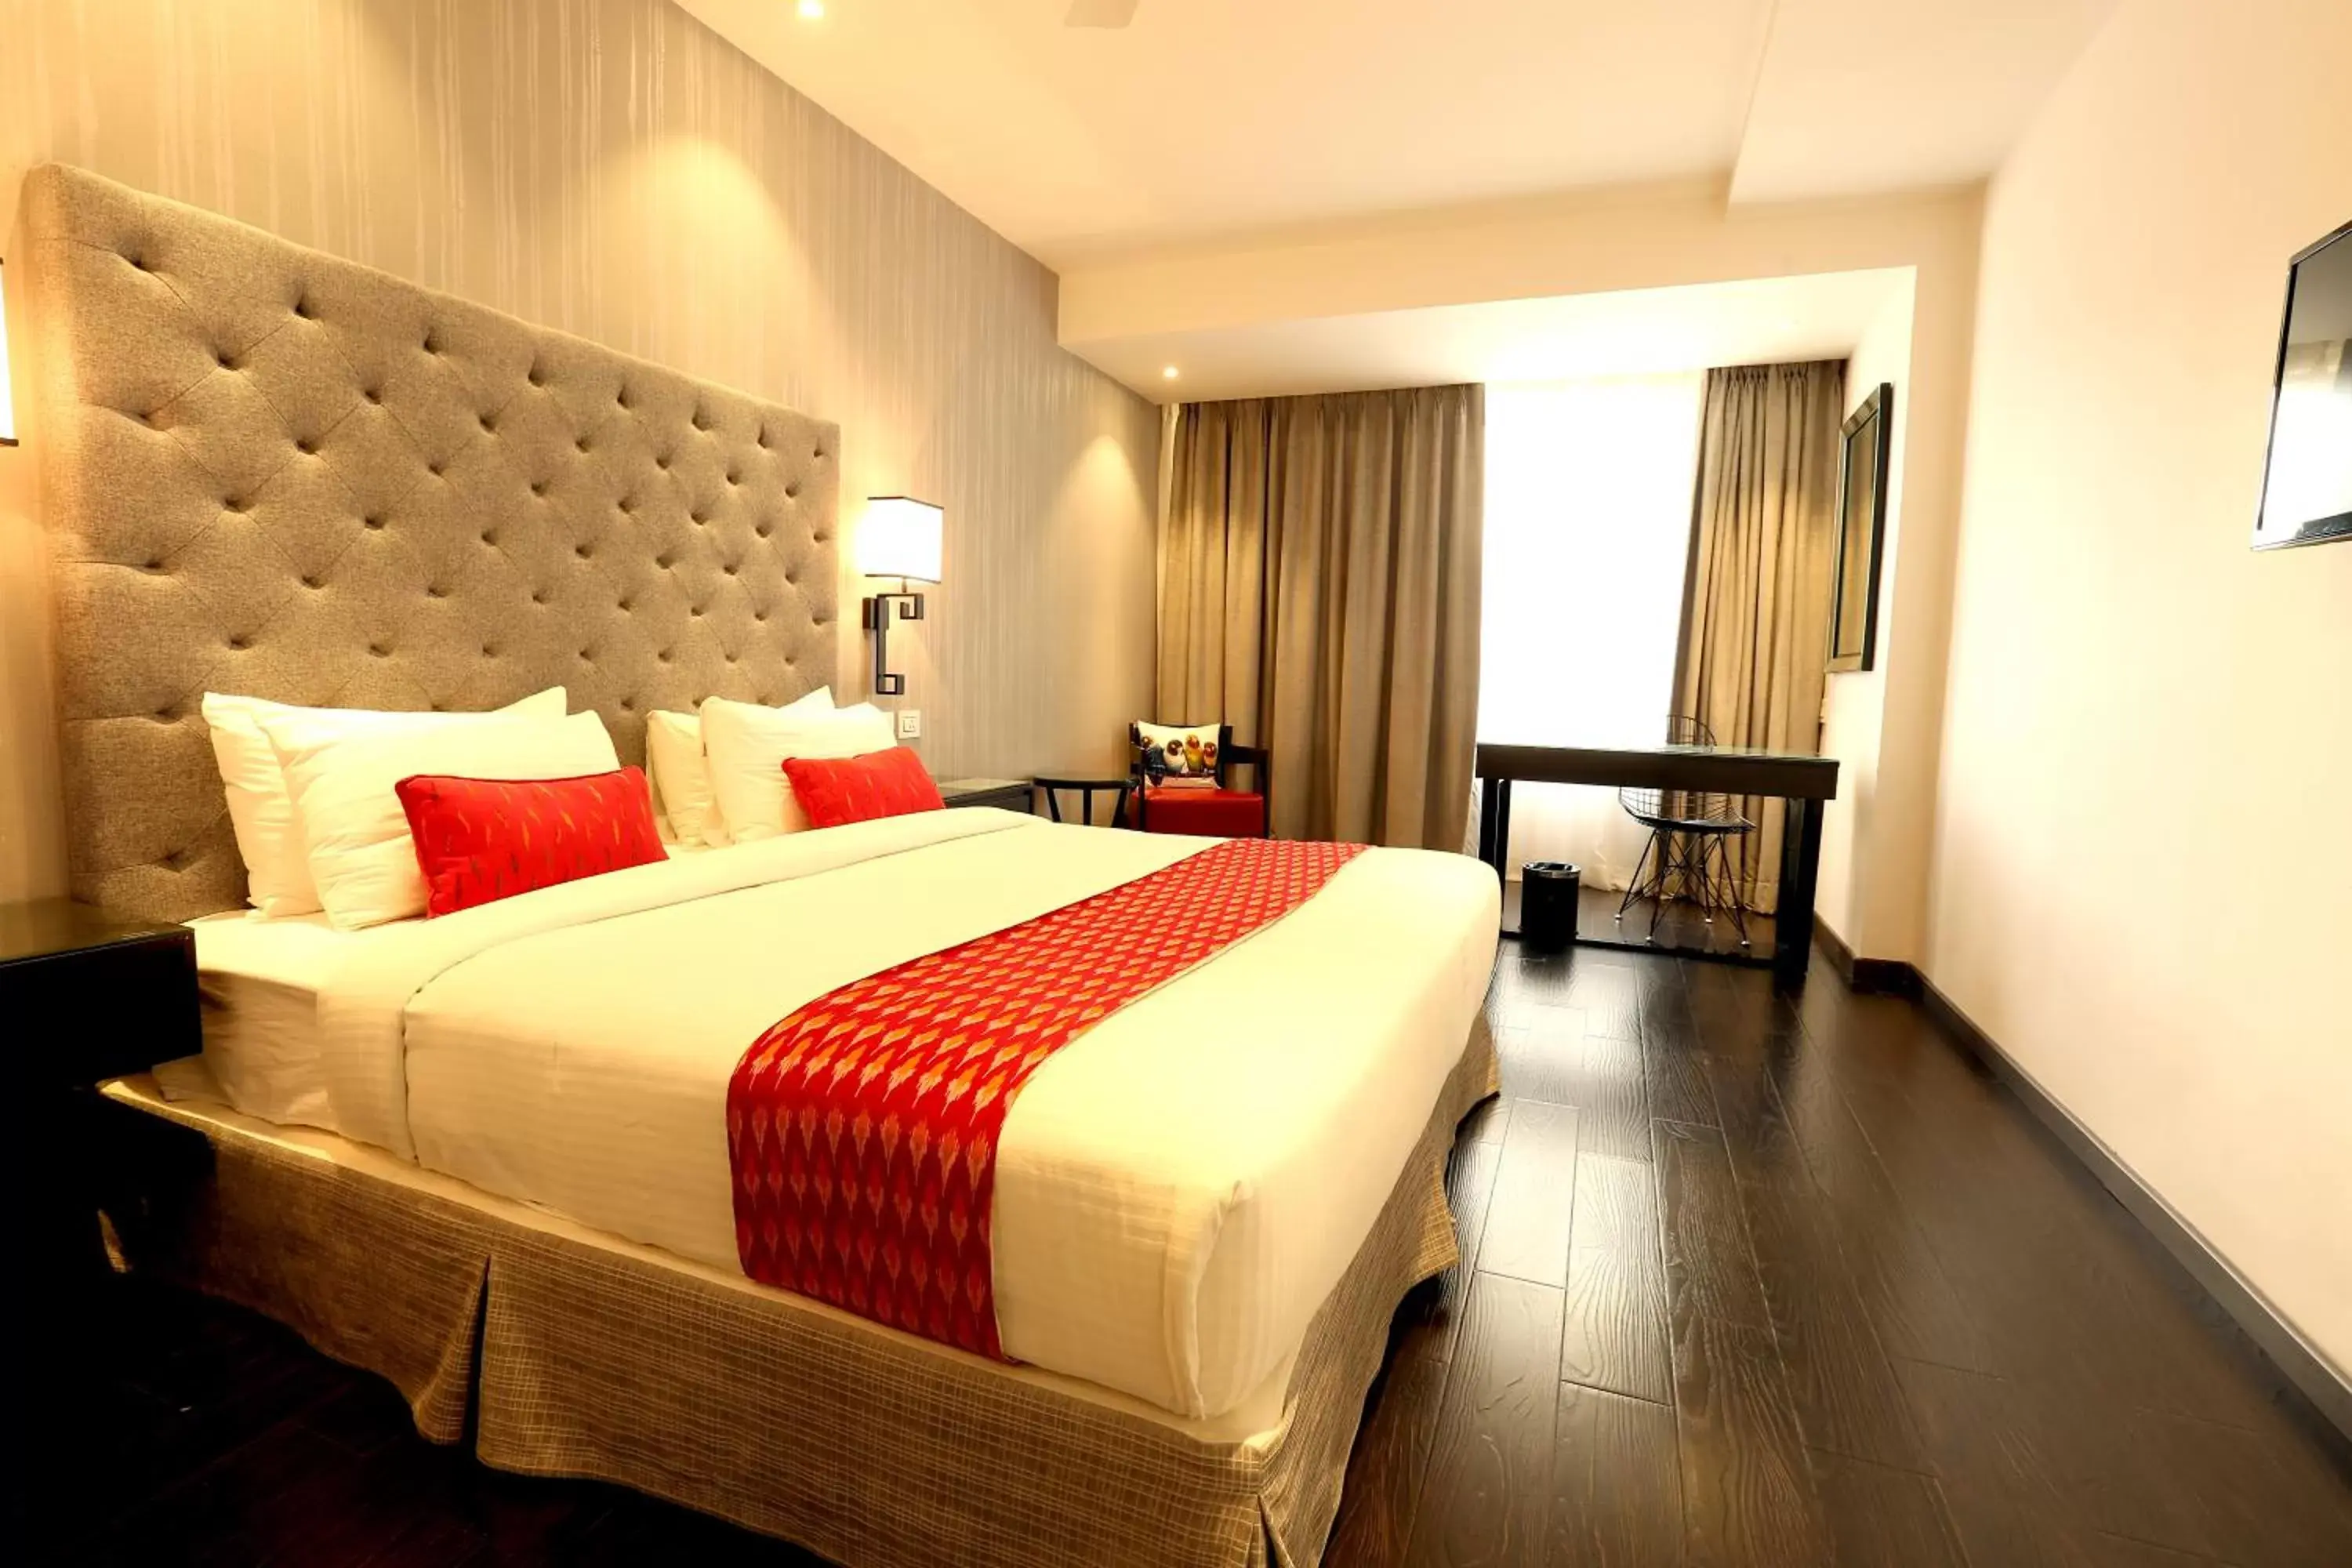 Bedroom, Room Photo in Hotel Deccan Serai, HITEC CITY, HYDERABAD